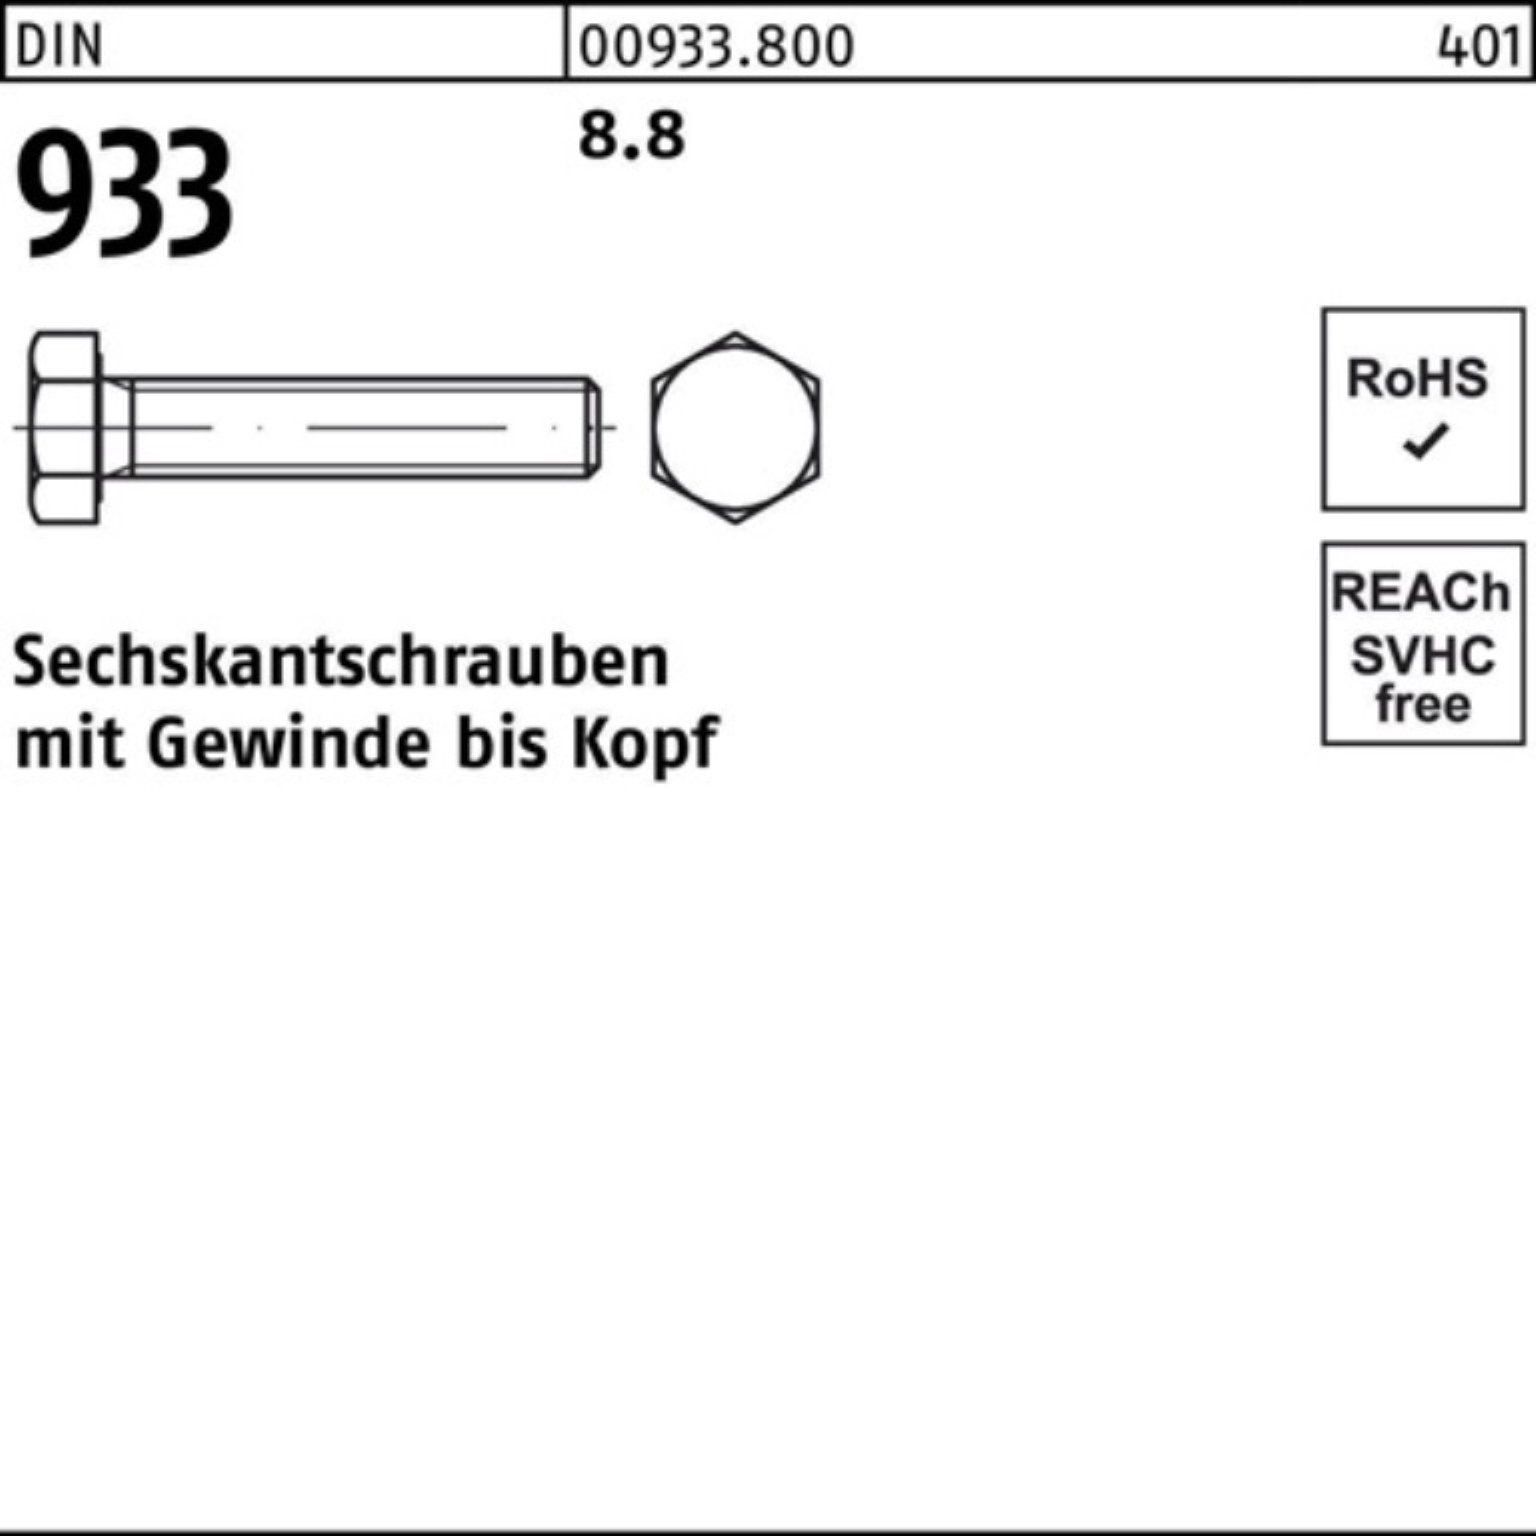 Sechskantschraube 90 VG 100er DIN Stück Sechskantschraube M10x Pack Reyher 100 8.8 933 DIN 933